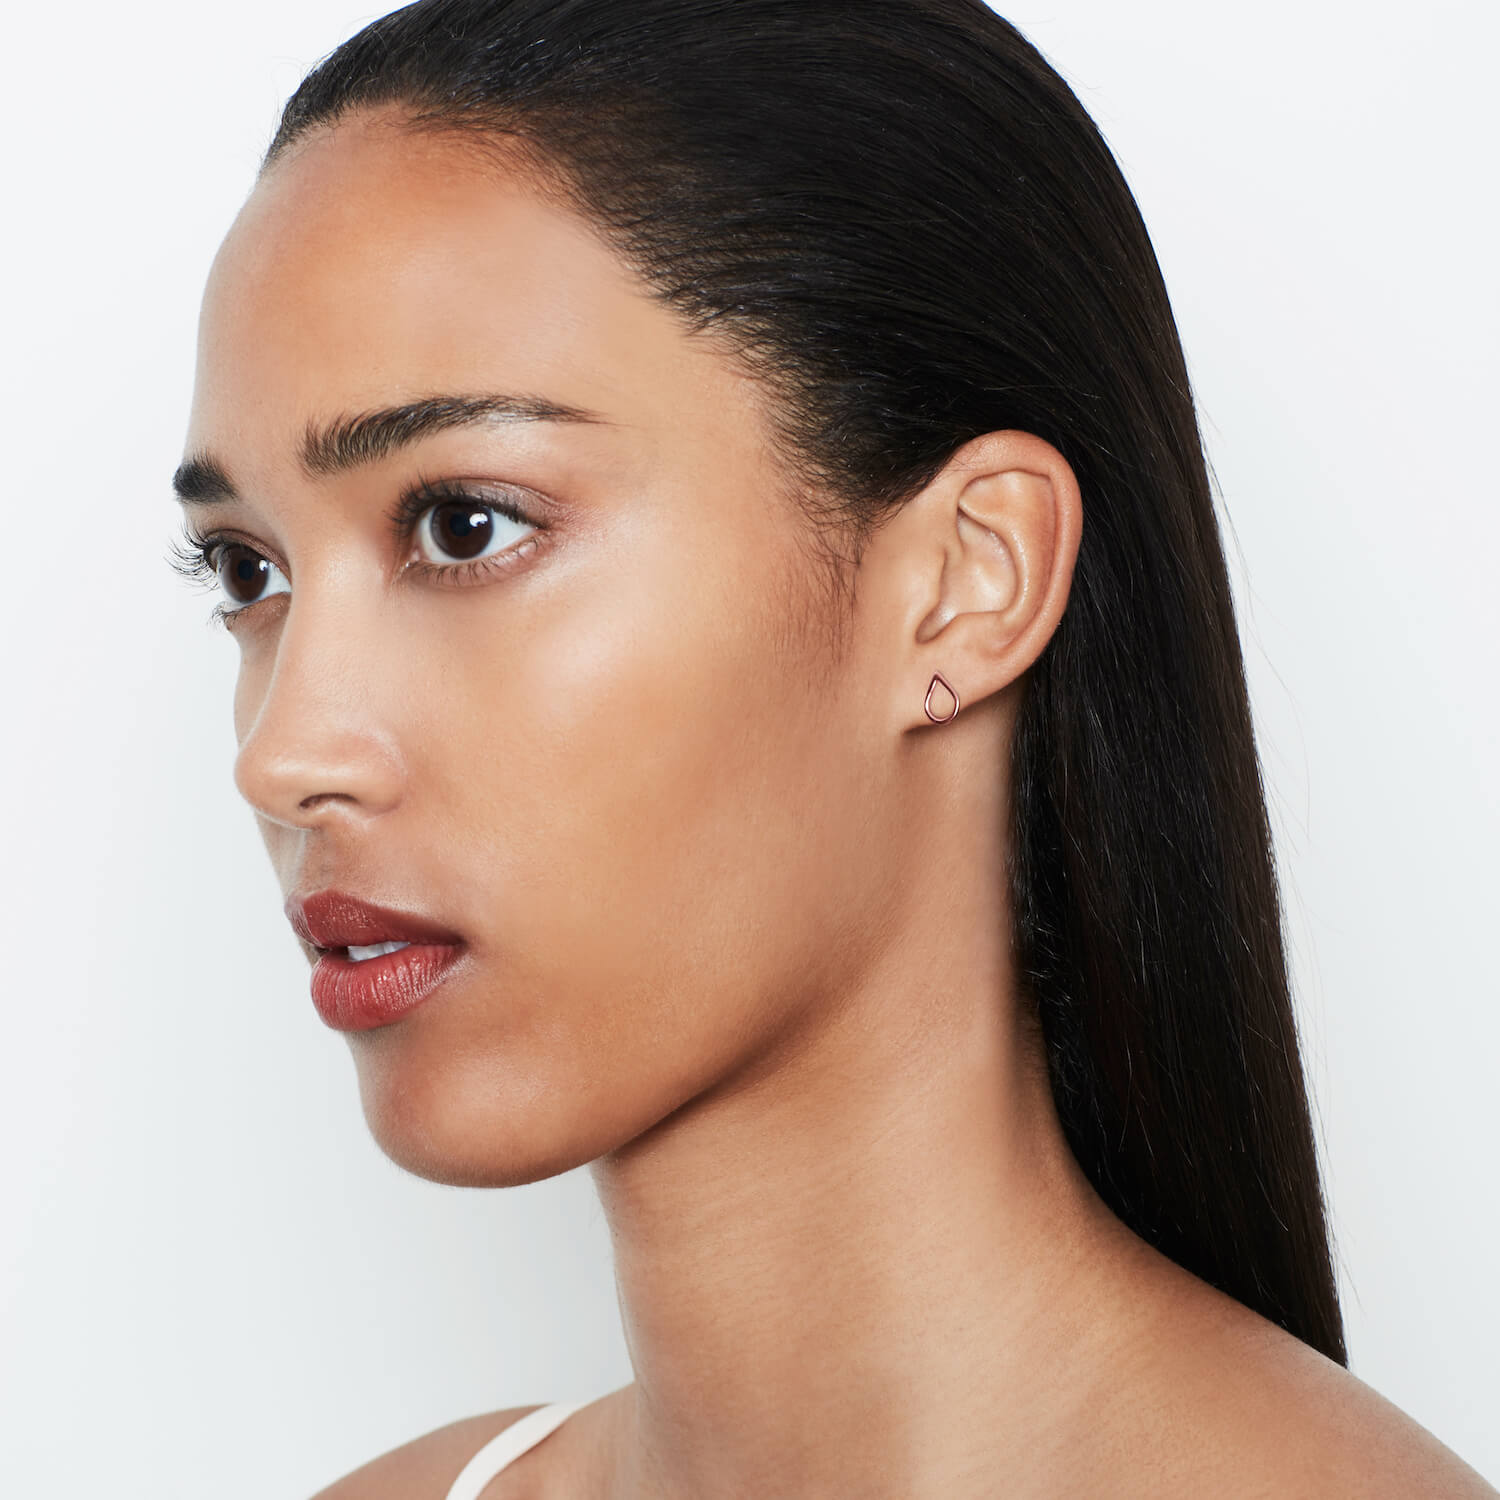 A model wearing rose gold droplet shaped earrings